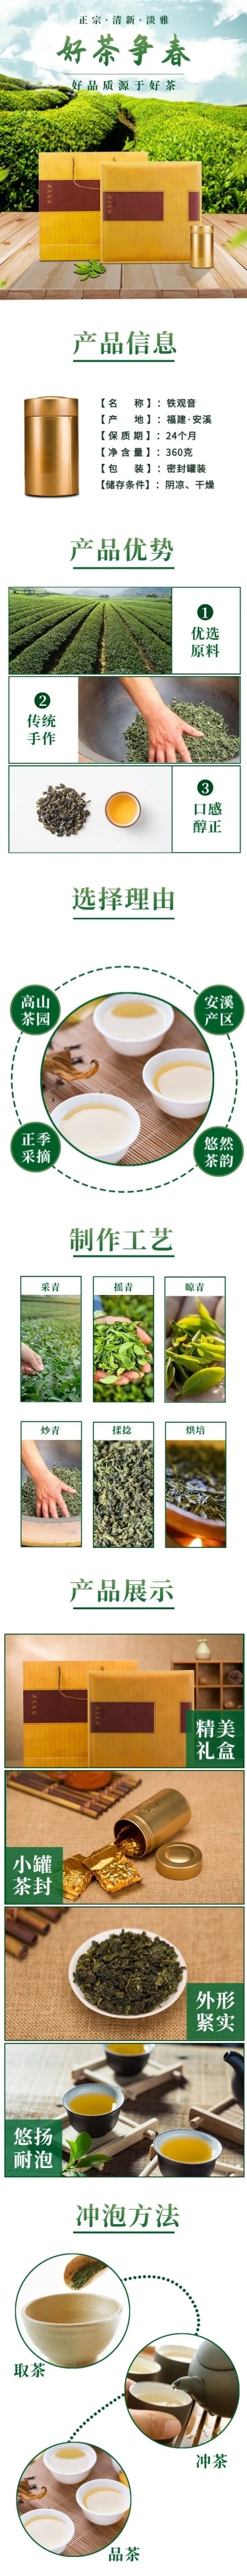 实景春上新食品生鲜茶叶详情页